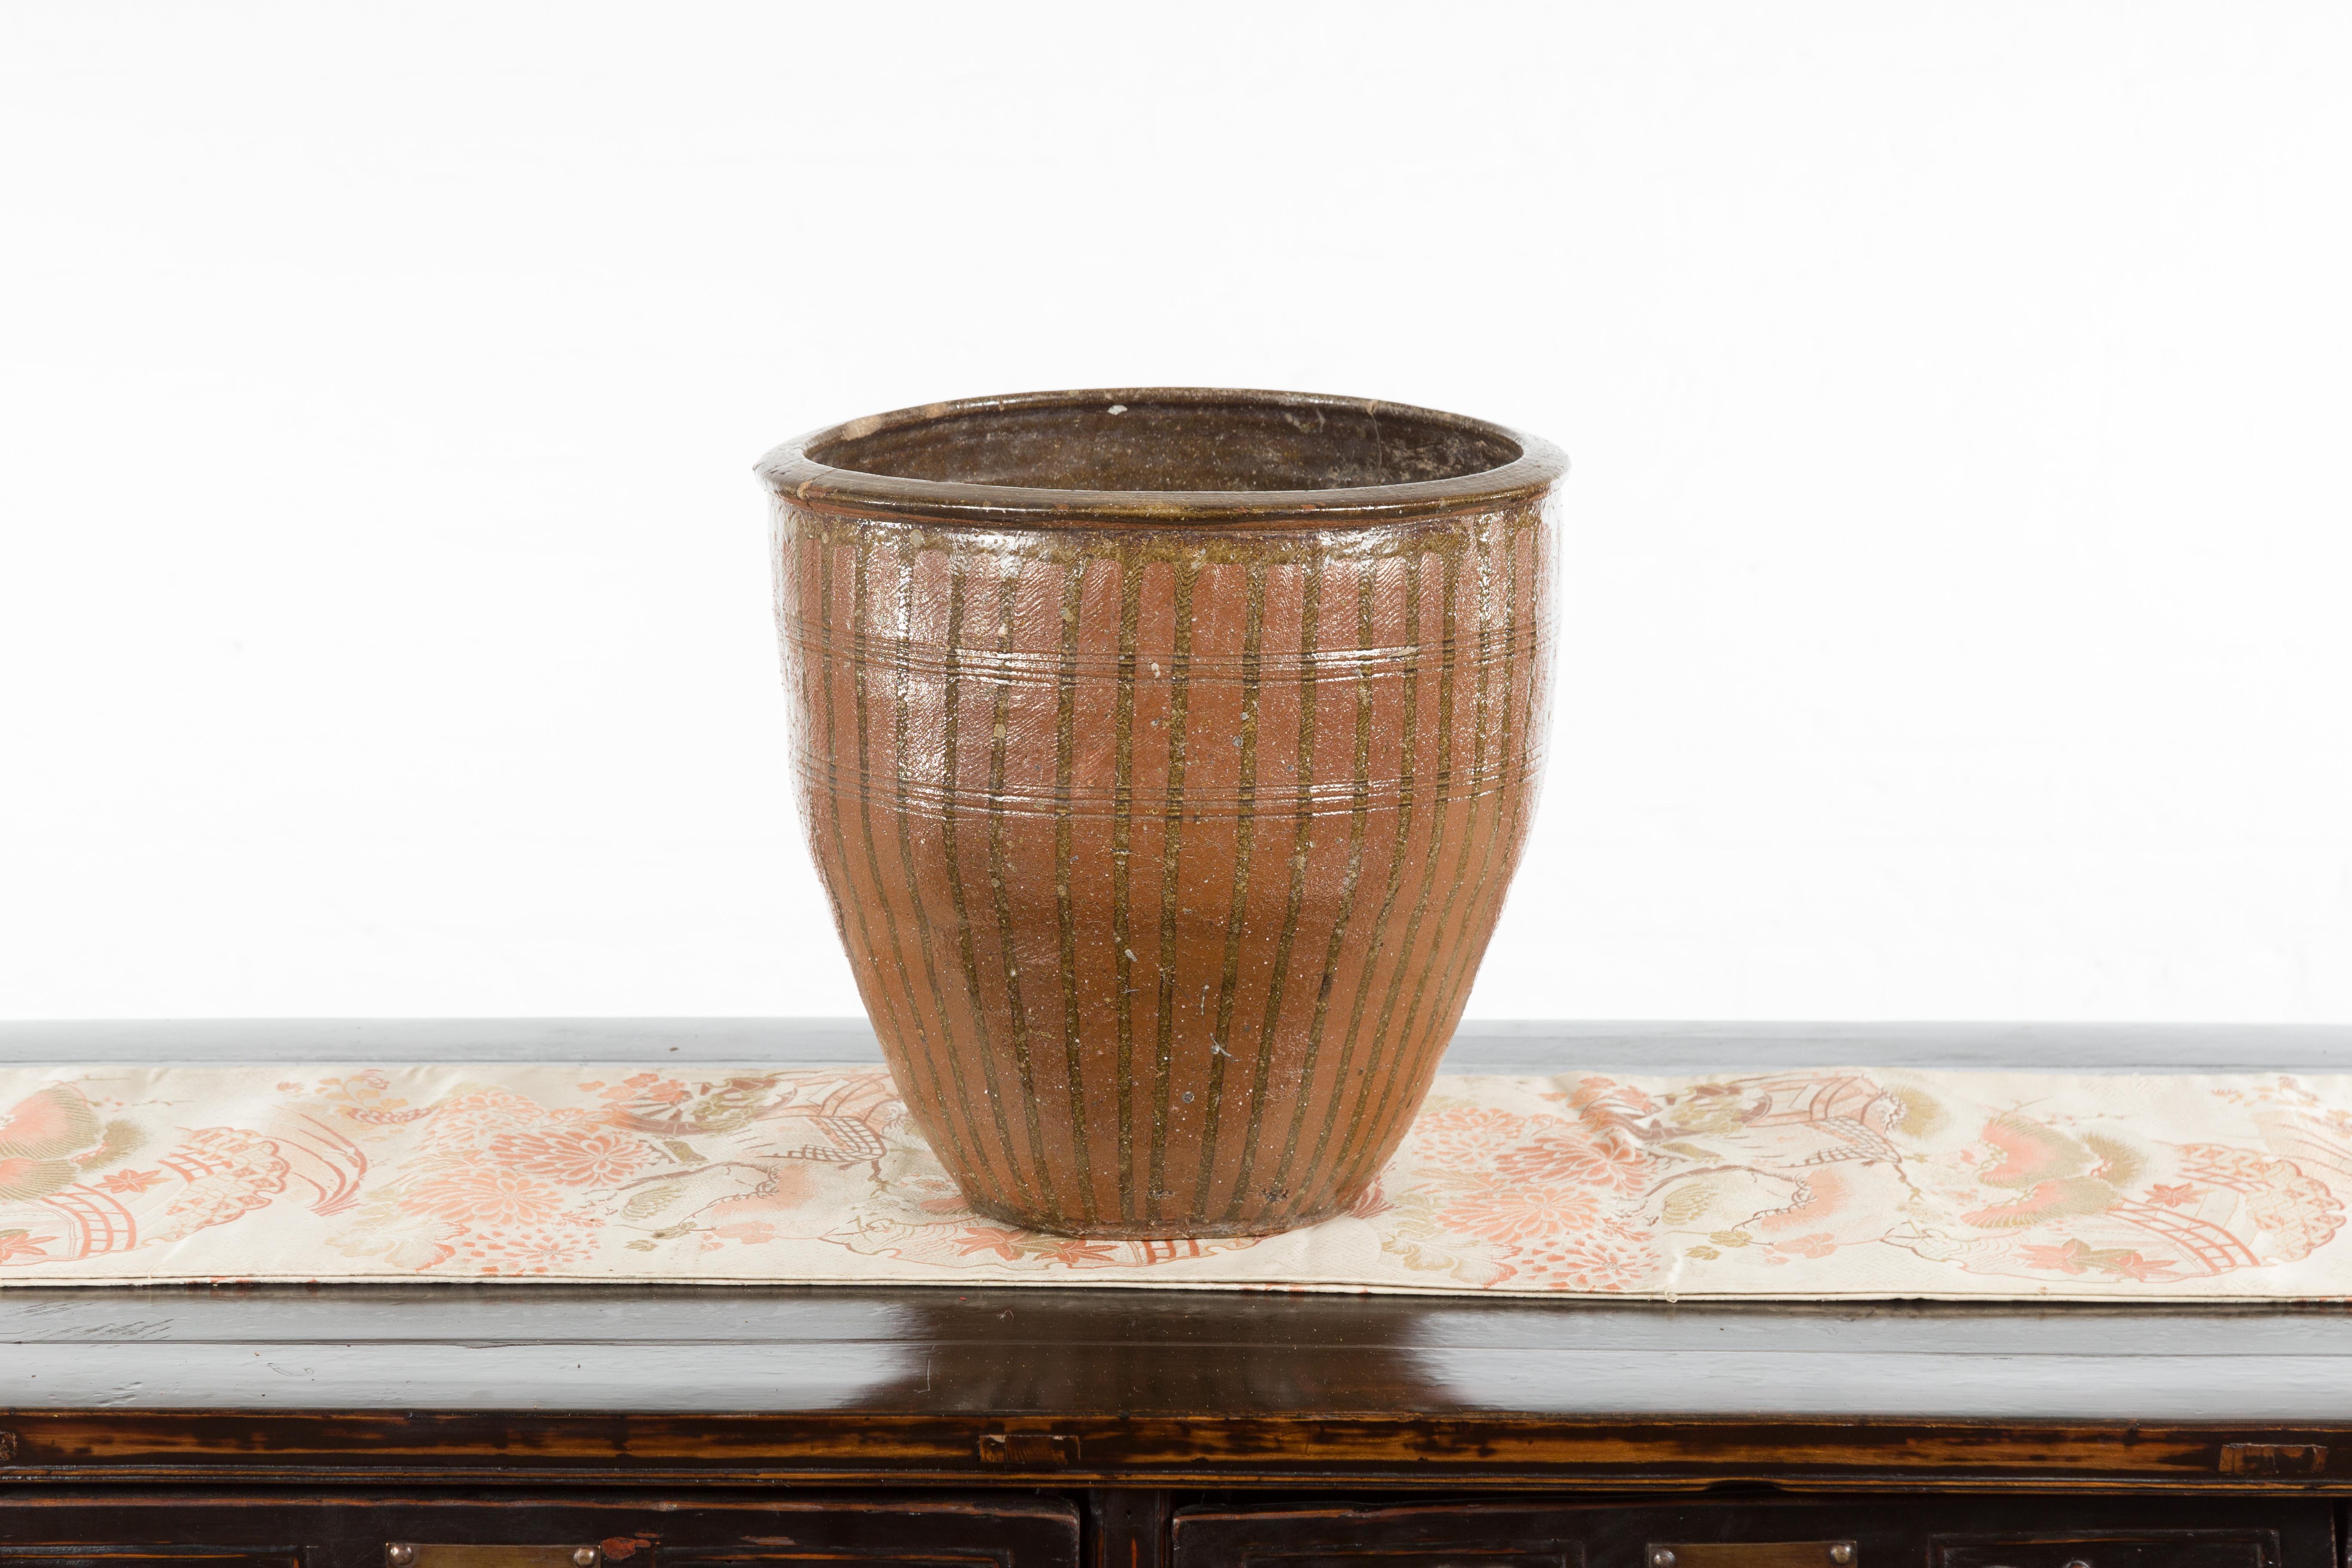 Une poterie japonaise ancienne Tamba Tachikui Ware du début du 20e siècle avec égouttage. Doté d'une belle couleur brune accentuée de gouttes et d'incisions horizontales, ce pot japonais a été produit dans l'un des six célèbres fours anciens du